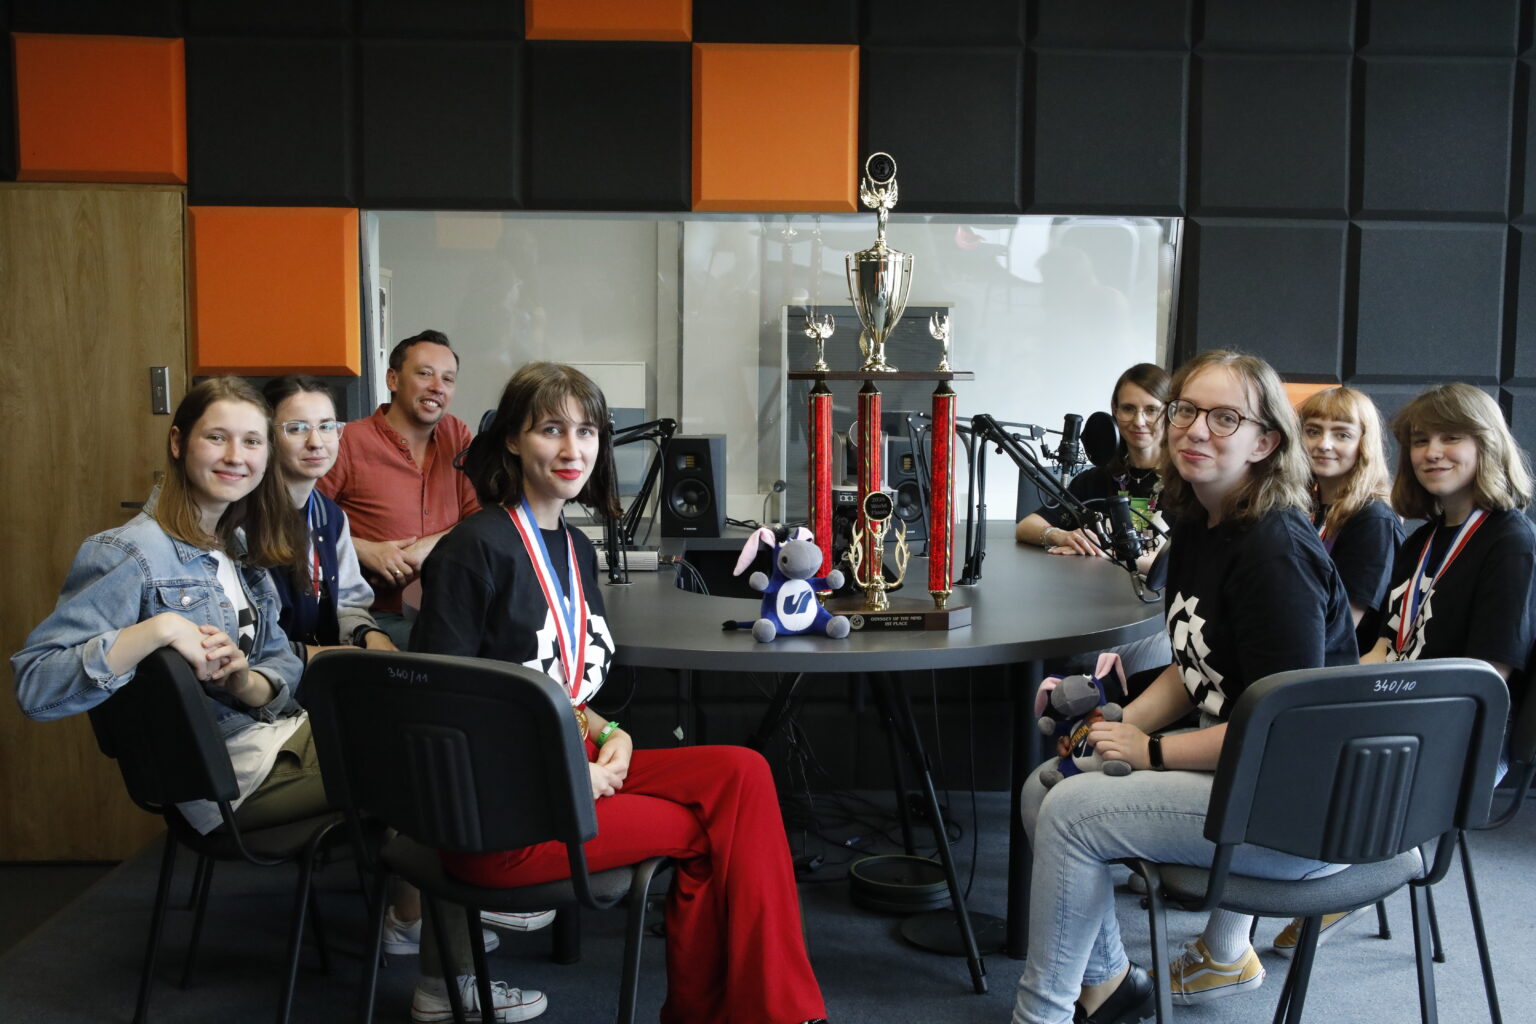 Na zdjęciu 6 uczestniczek konkursu wraz z trenerką oraz prowadzącym podcast. Siedzą w studiu radiowym na środku widać widowiskowy puchar i maskotkę usiołka